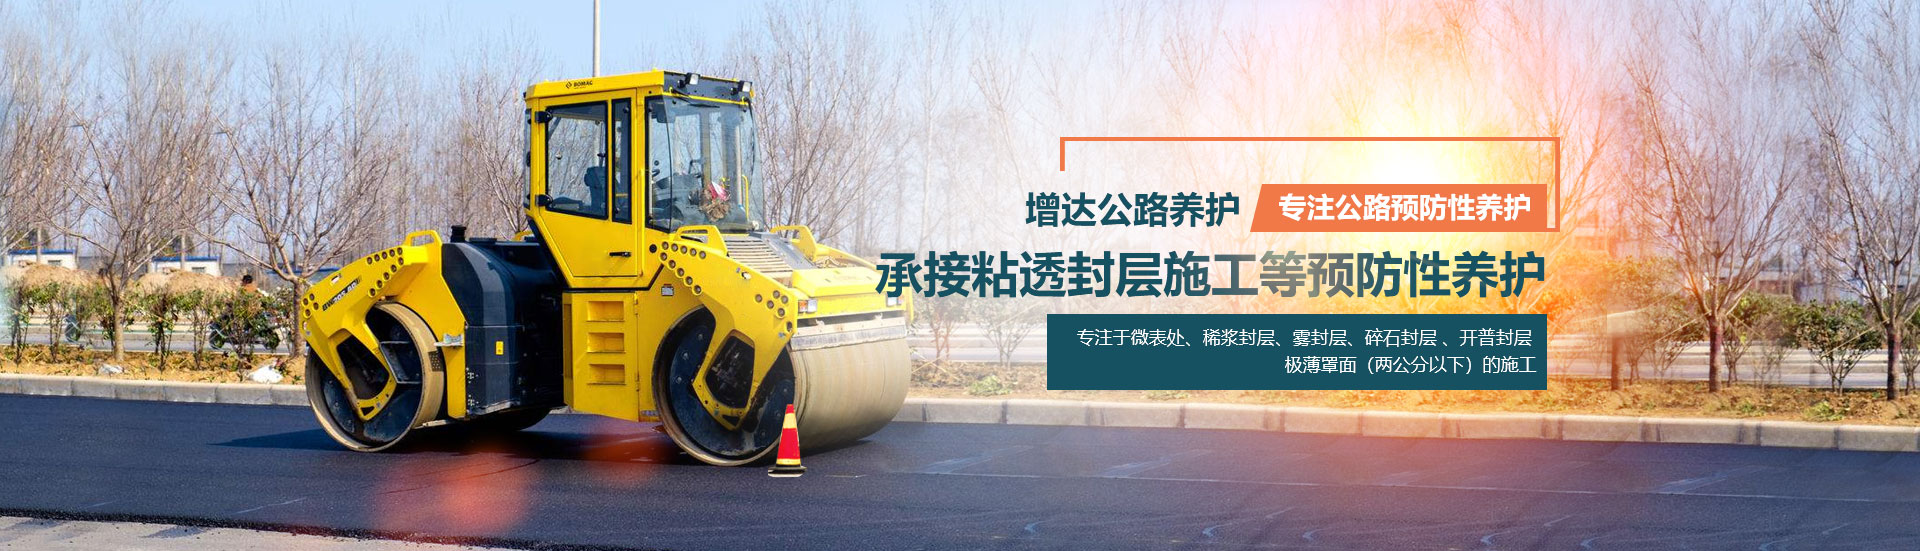 河南省增达公路养护管理有限公司